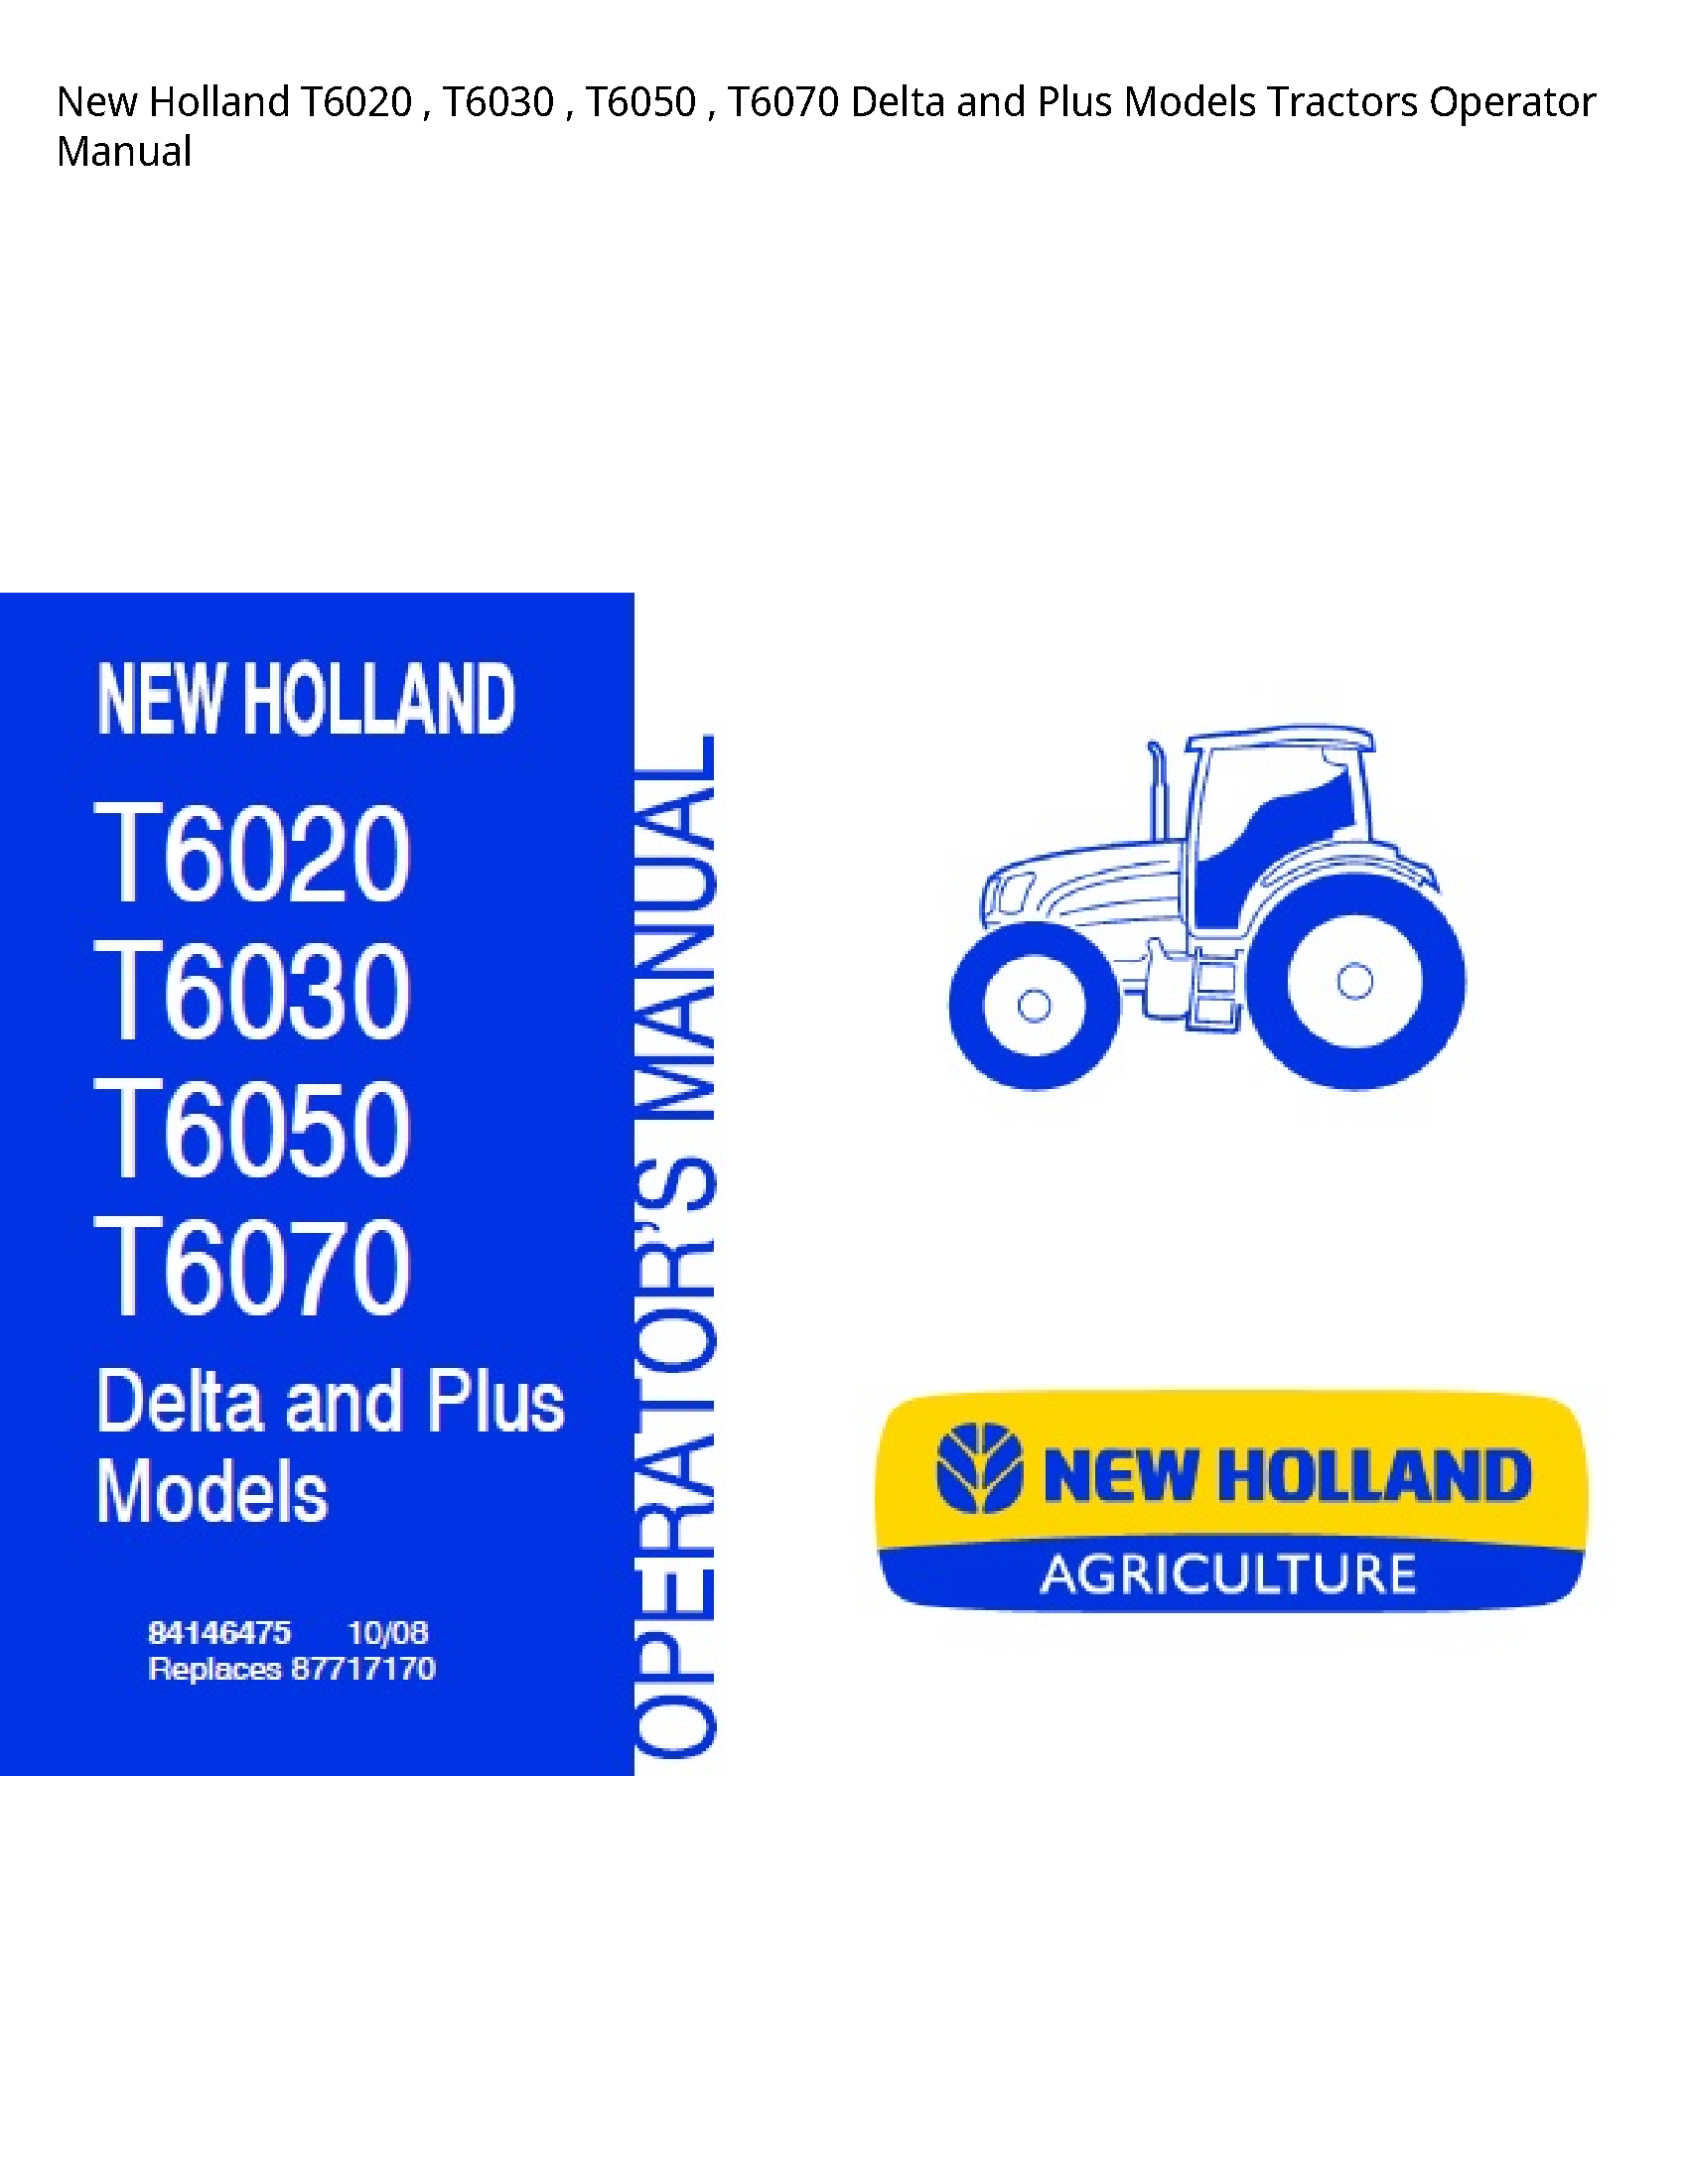 New Holland T6020 Delta  Plus Tractors Operator manual